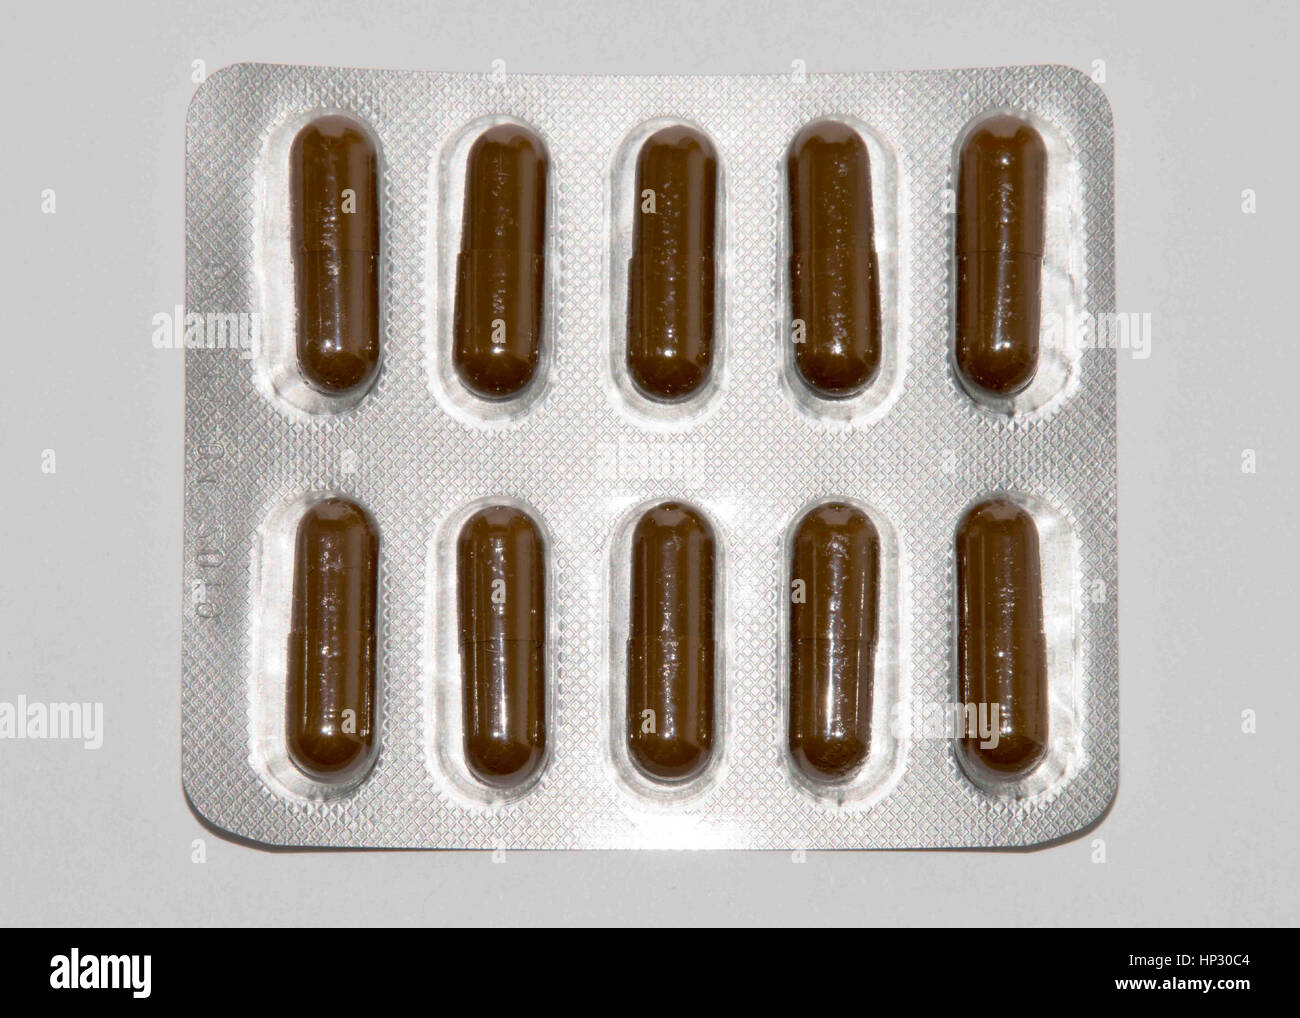 Registerkarten, Vitamine, Omega-3, Medikamente Tabletten und Kapseln in einen Becher füllen. Medikamente Tabletten, Zäpfchen Flaschen, Kapseln und Thermometer auf Registerkarte "aus Holz" Stockfoto